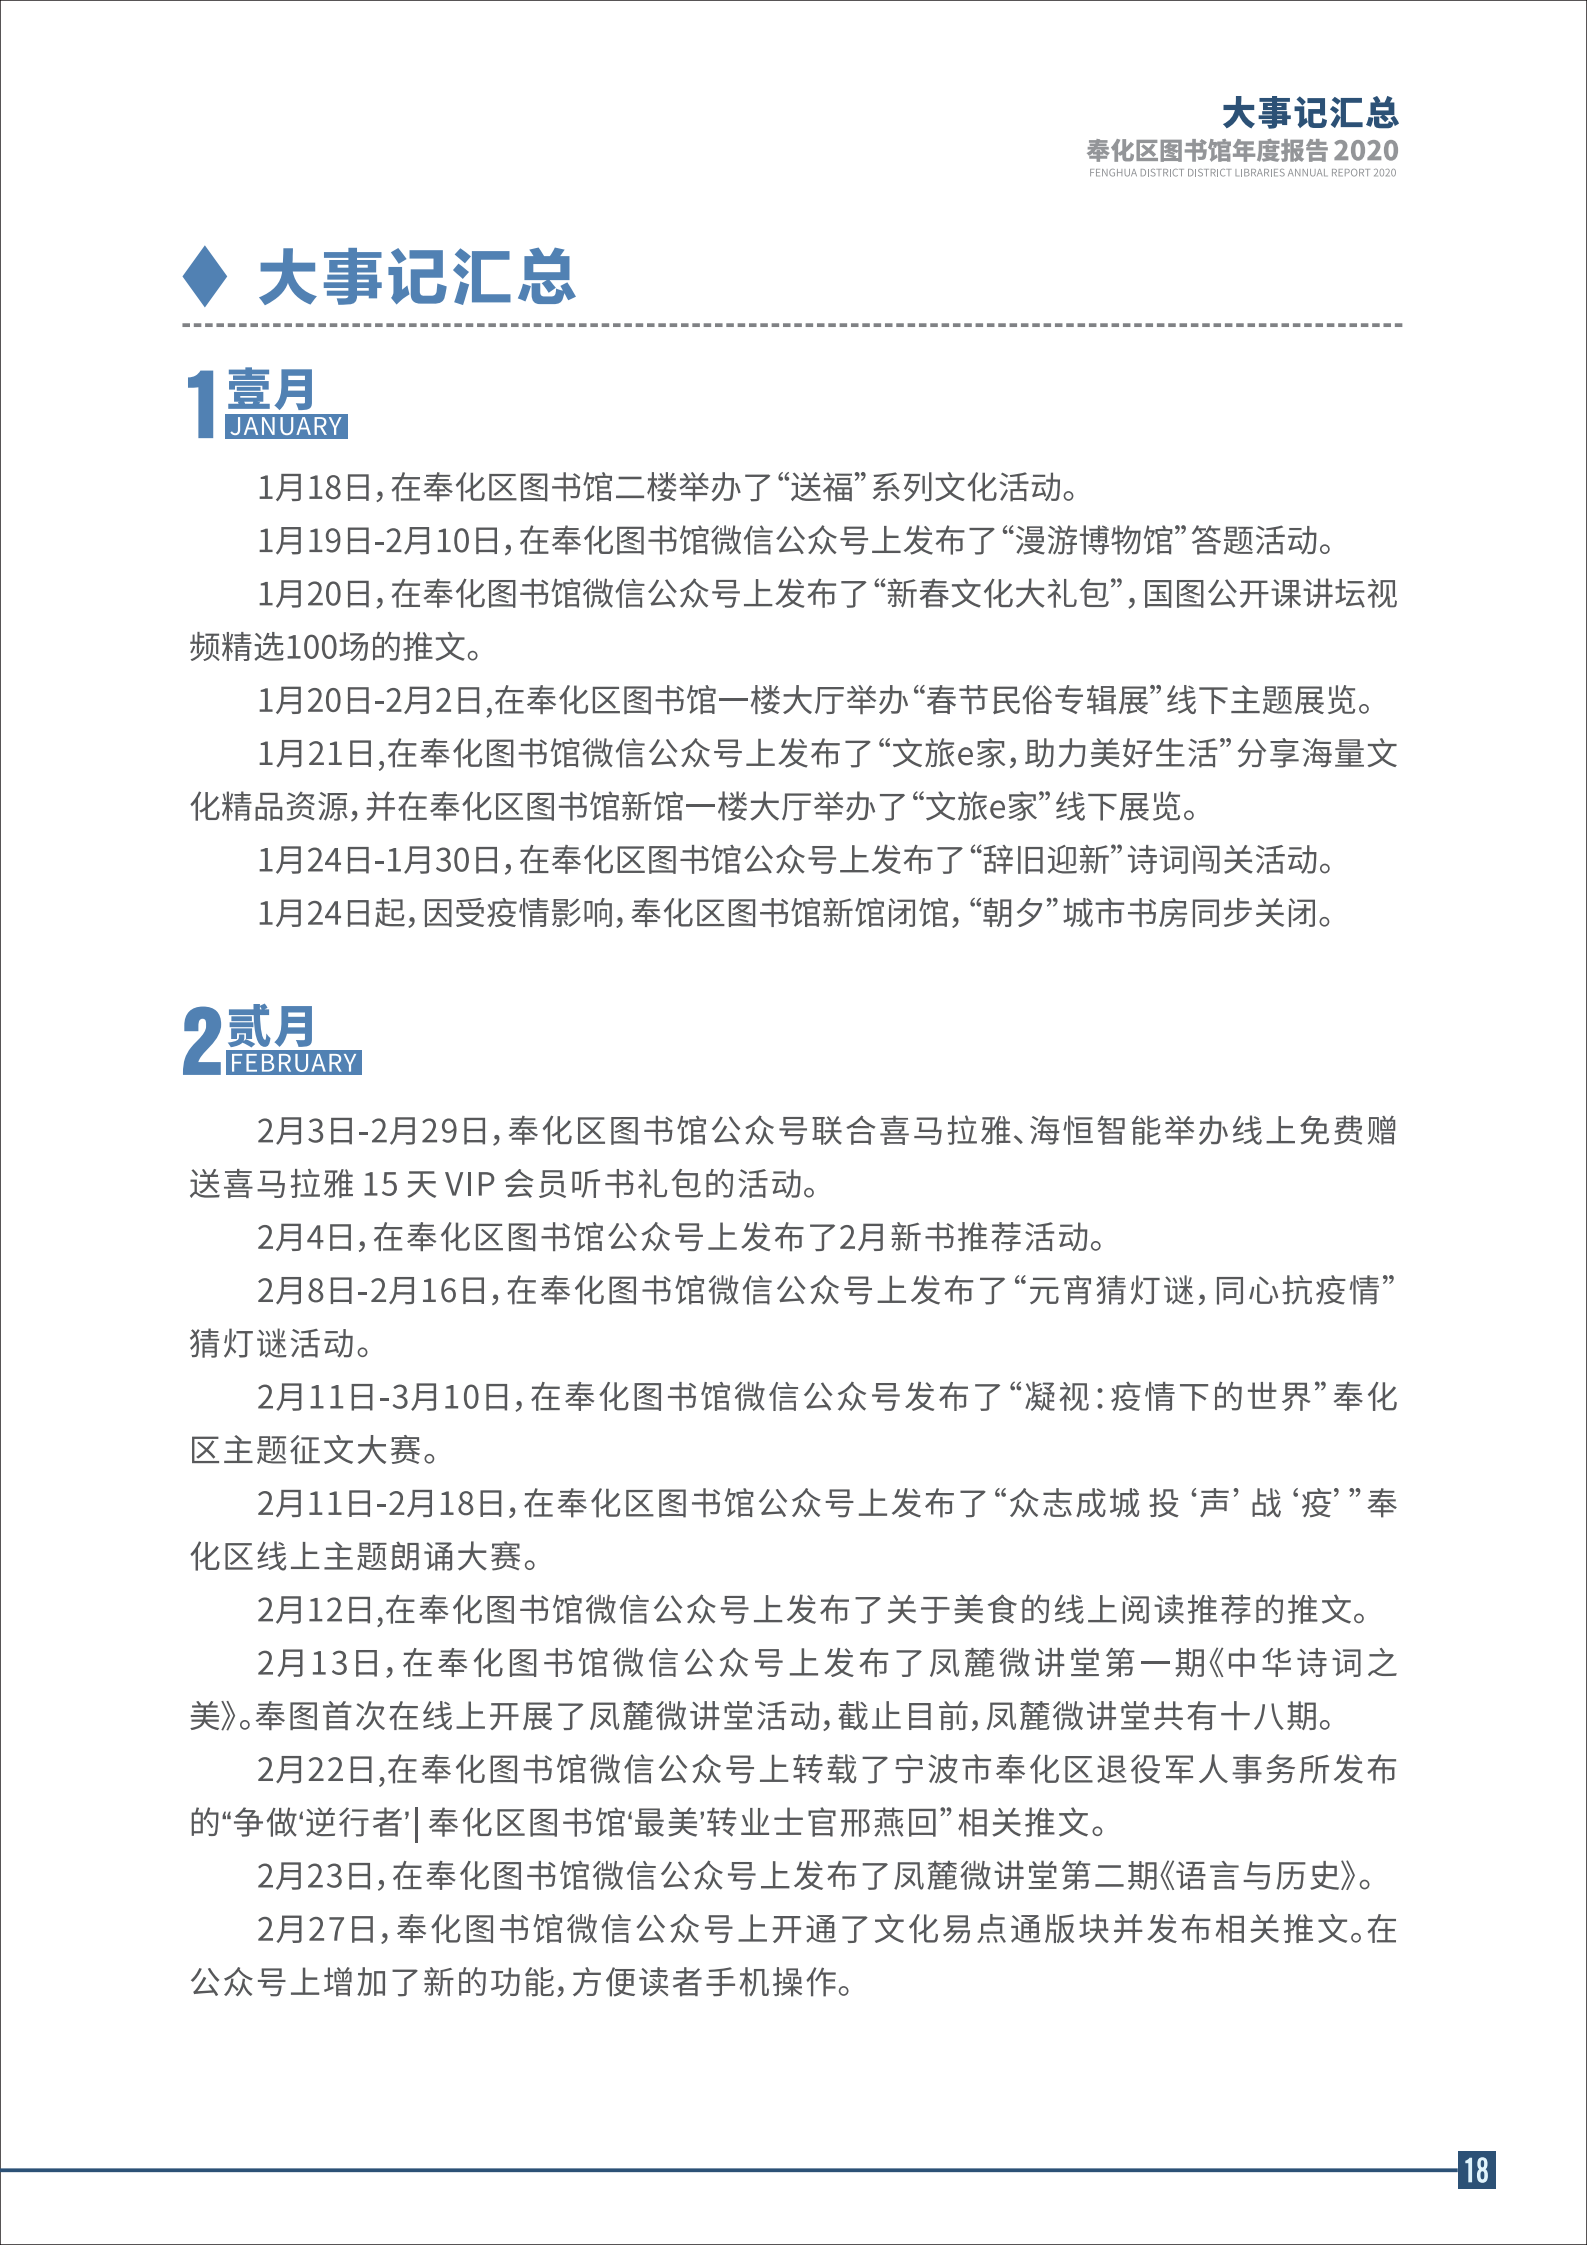 宁波市奉化区图书馆2020年年度报告 终稿_18.png